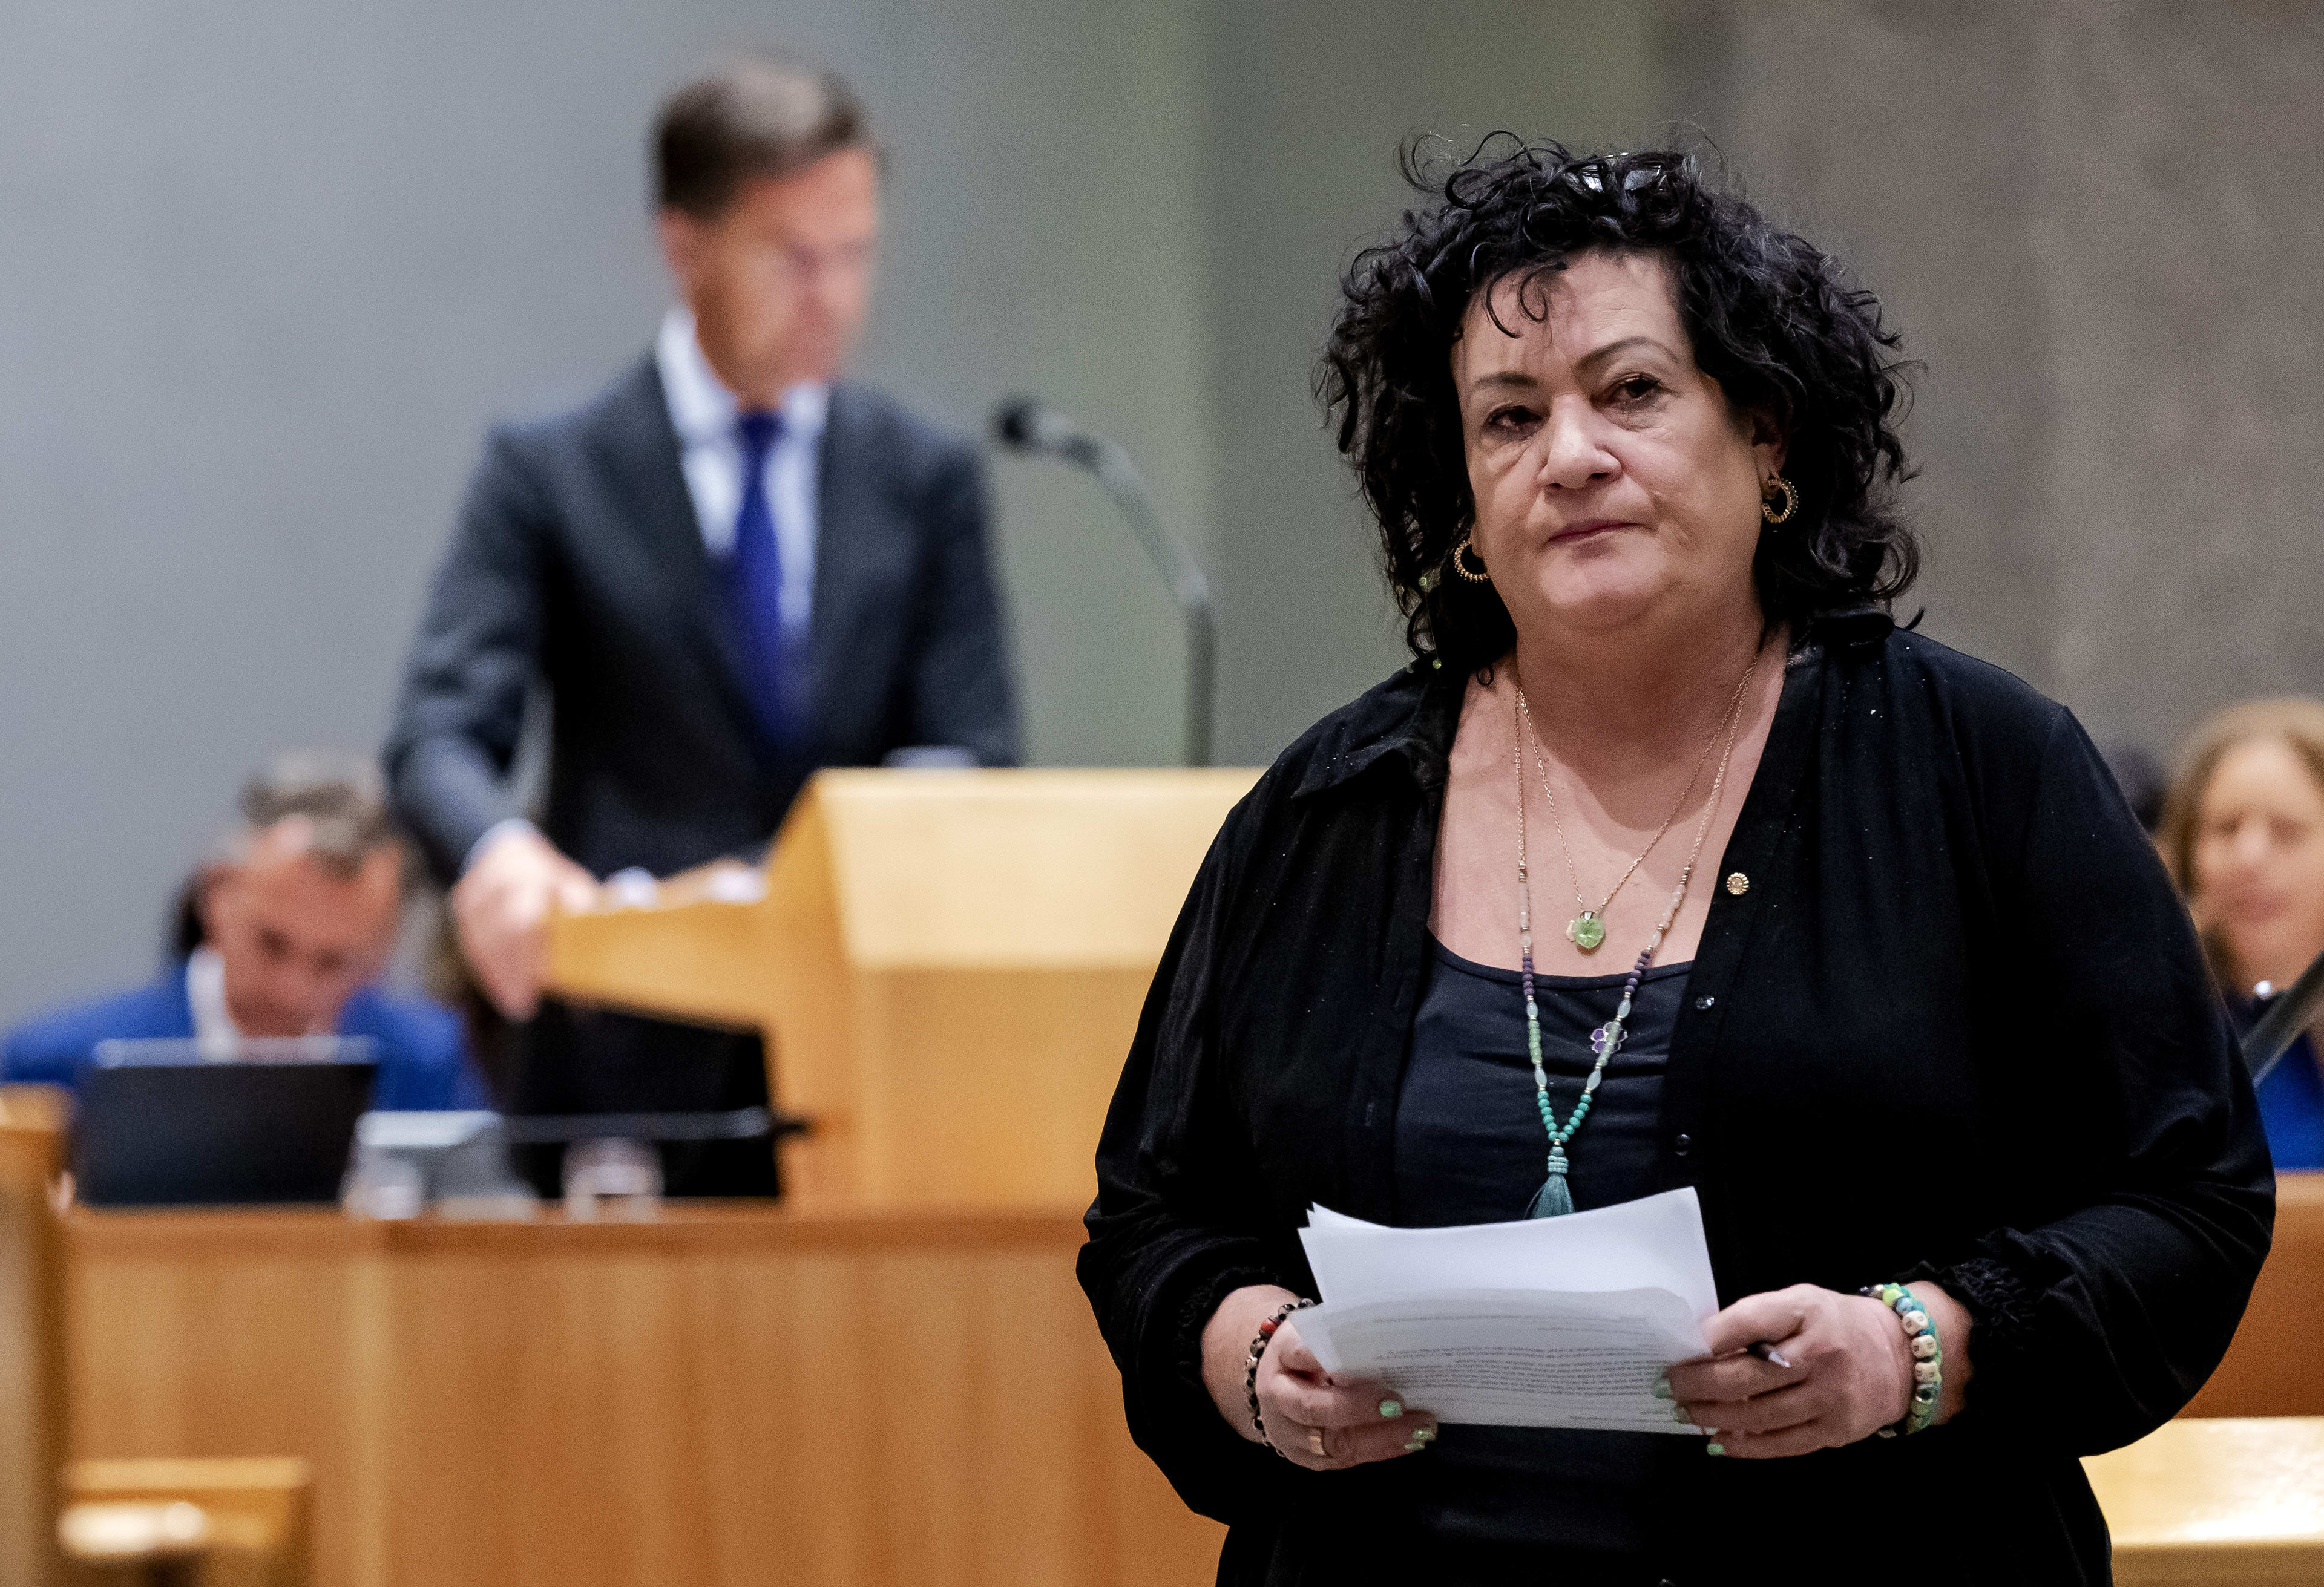 Ook Van der Plas doet aangifte tegen nepporno: 'Mijn moeder schrikt zich kapot'